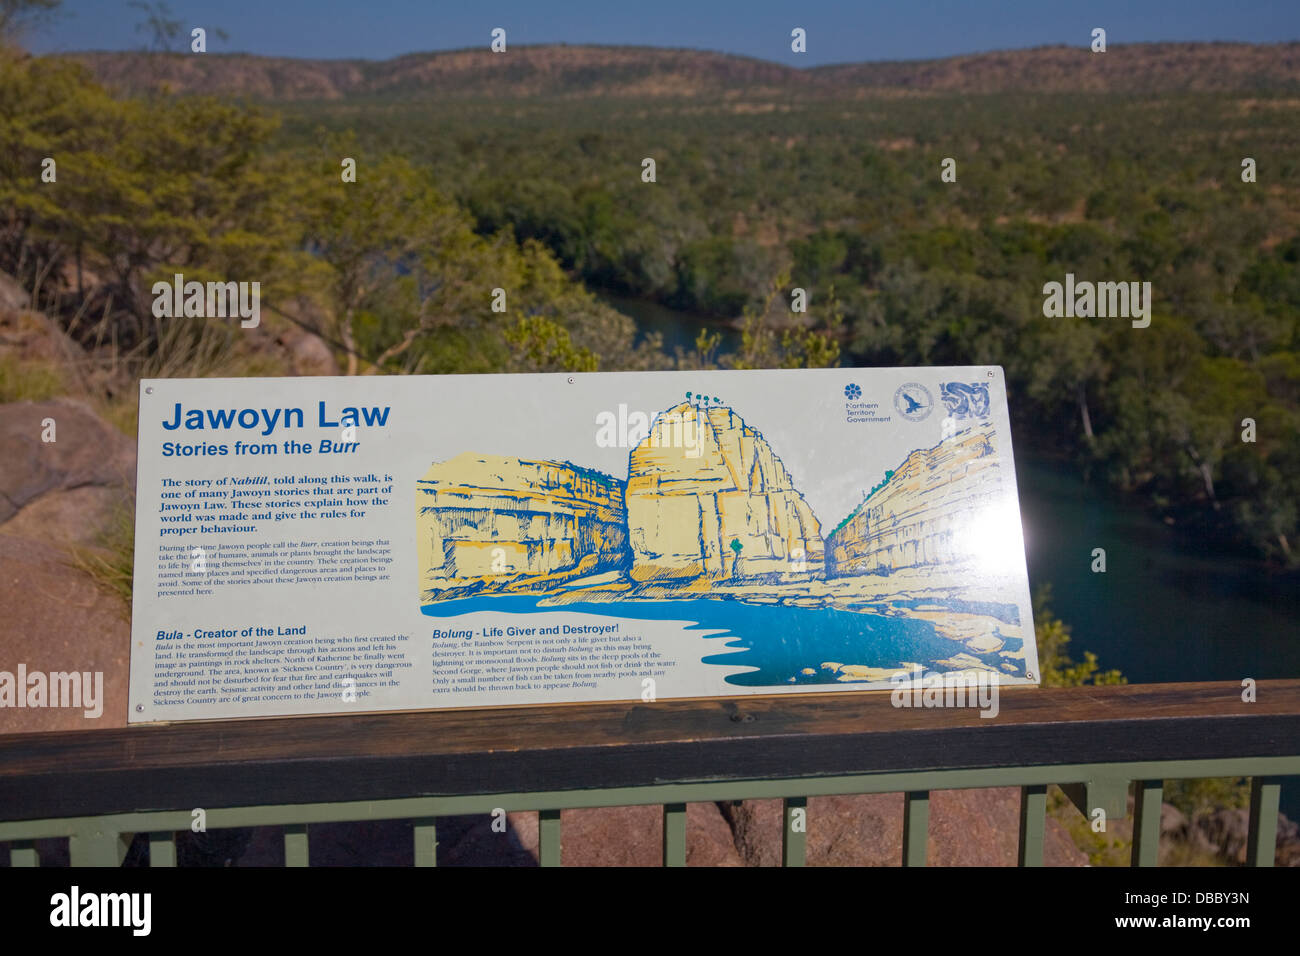 La gorge de Katherine est vue depuis la promenade de baruwei dans le parc national de nitmiluk, en australie Banque D'Images